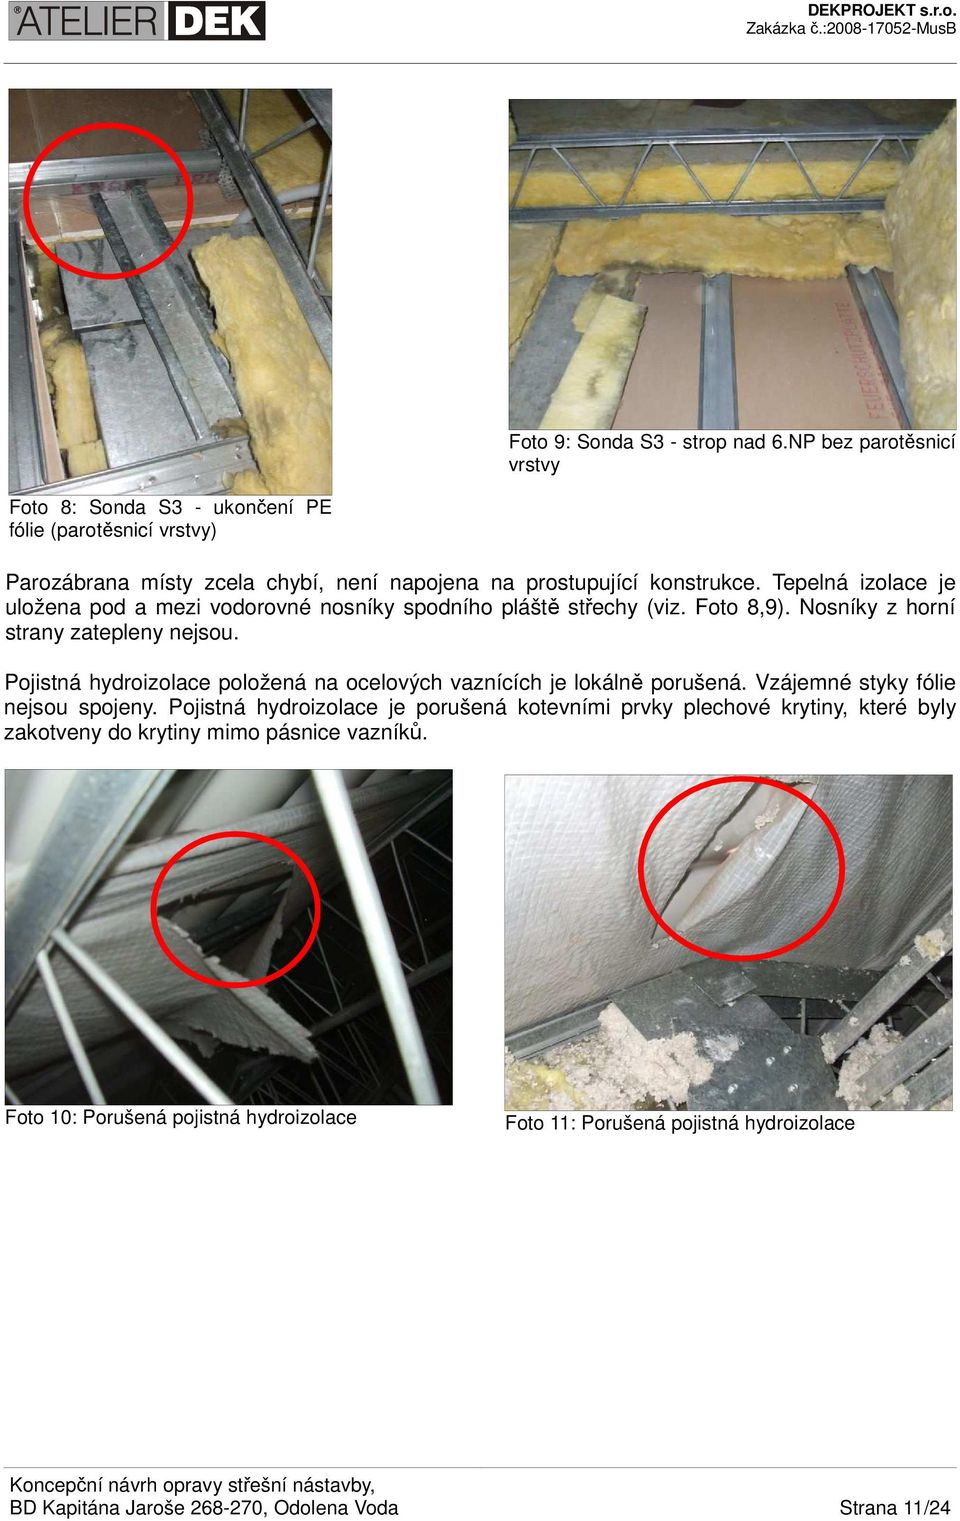 Tepelná izolace je uložena pod a mezi vodorovné nosníky spodního pláště střechy (viz. Foto 8,9). Nosníky z horní strany zatepleny nejsou.